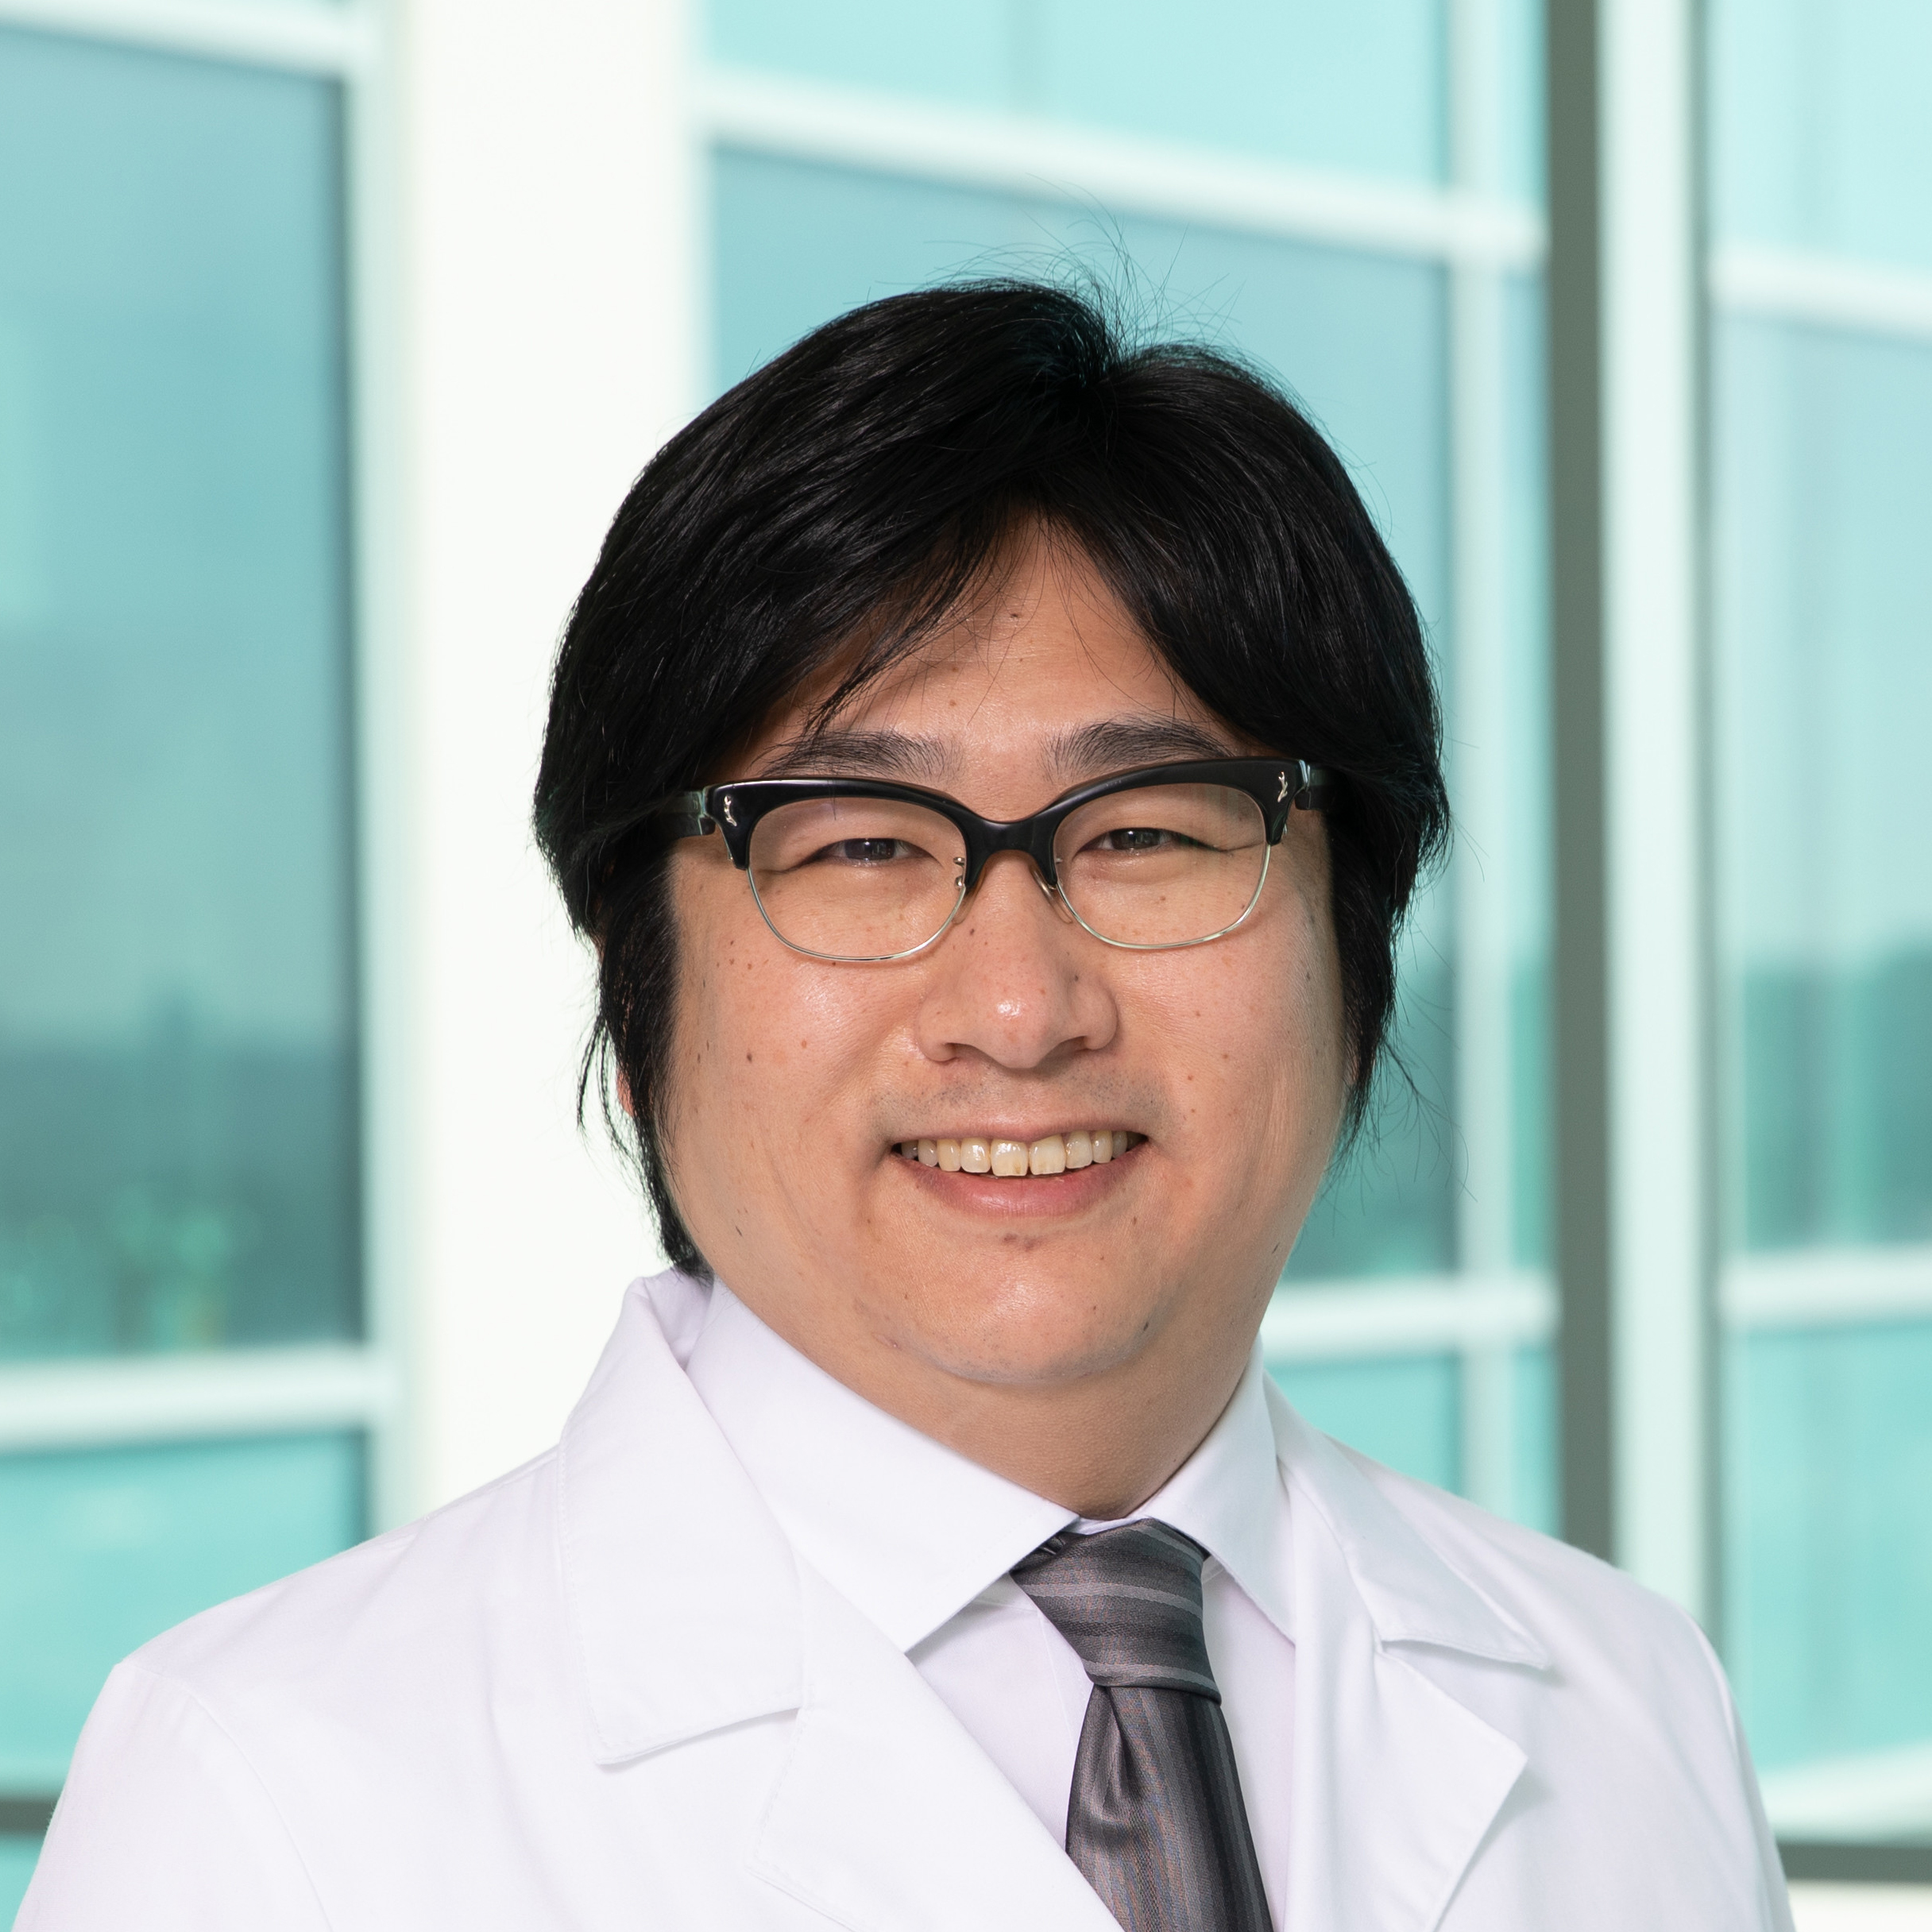 Dr. Takashi Kitamura